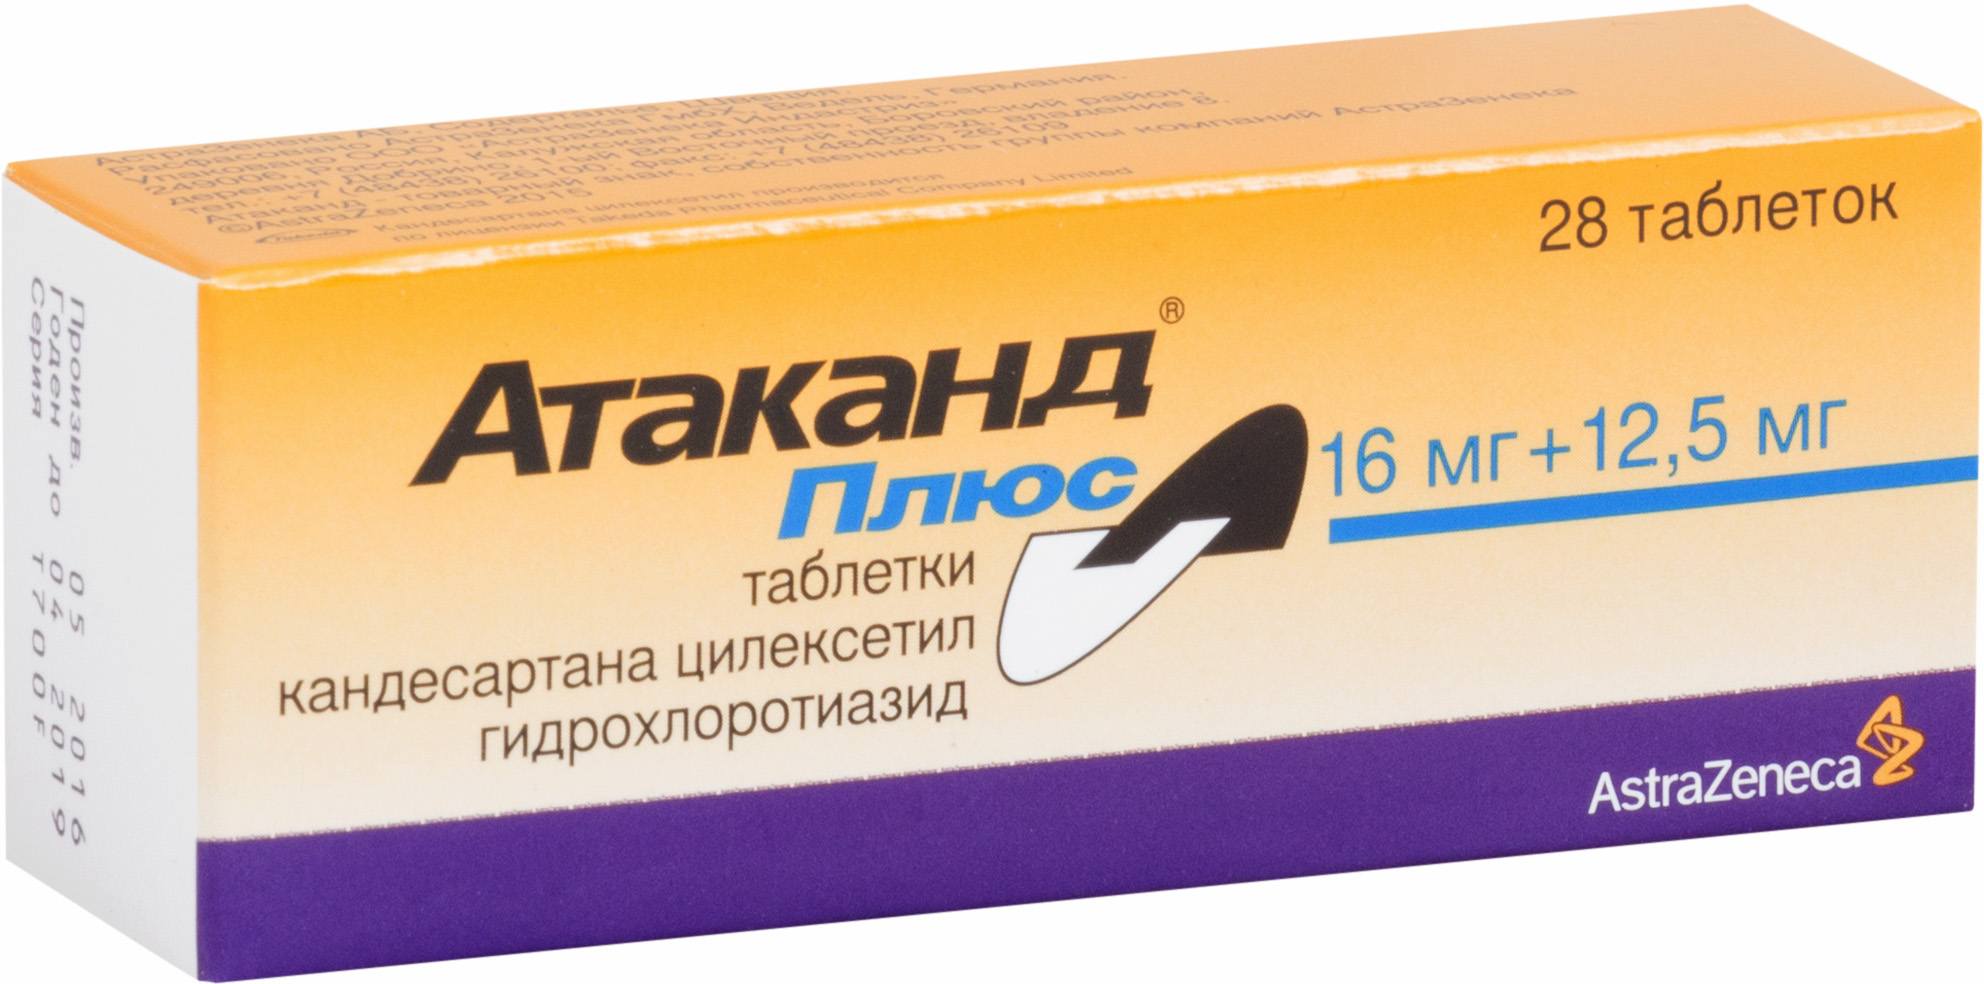 Купить Атаканд плюс таблетки 16 мг+12, 5 мг 28 шт., AstraZeneca AB